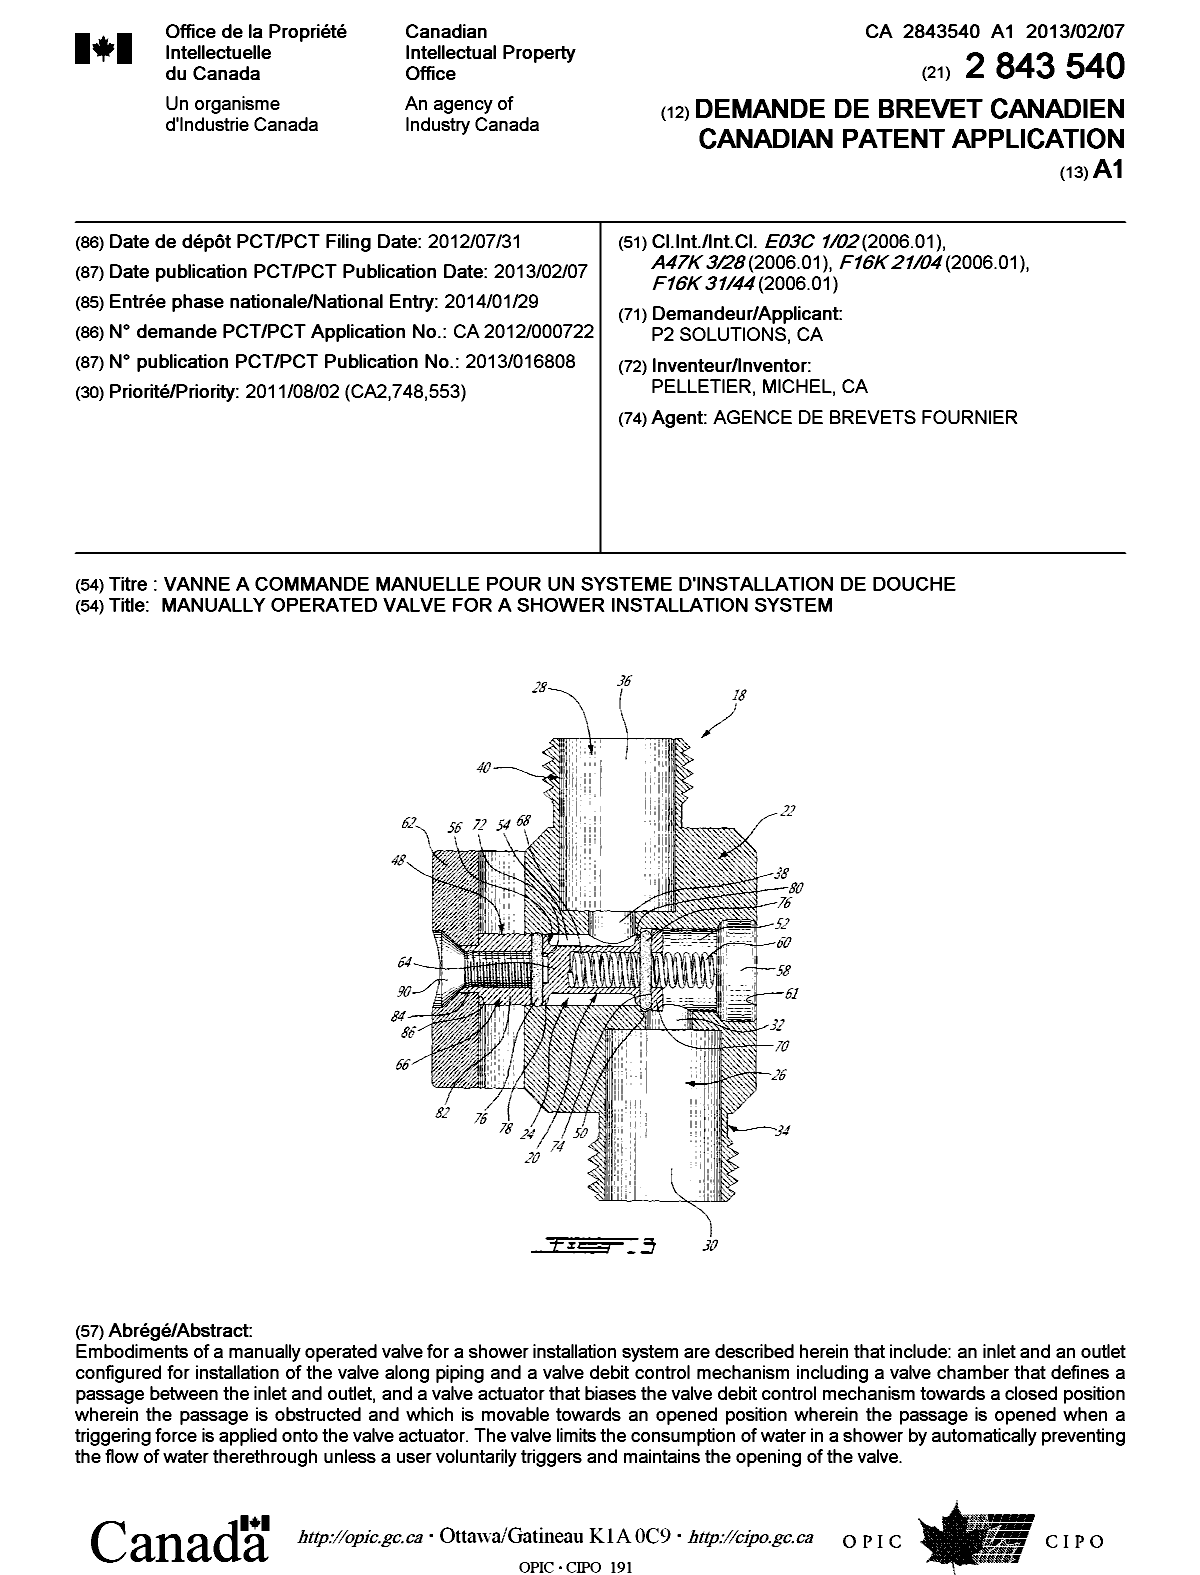 Document de brevet canadien 2843540. Page couverture 20140313. Image 1 de 1